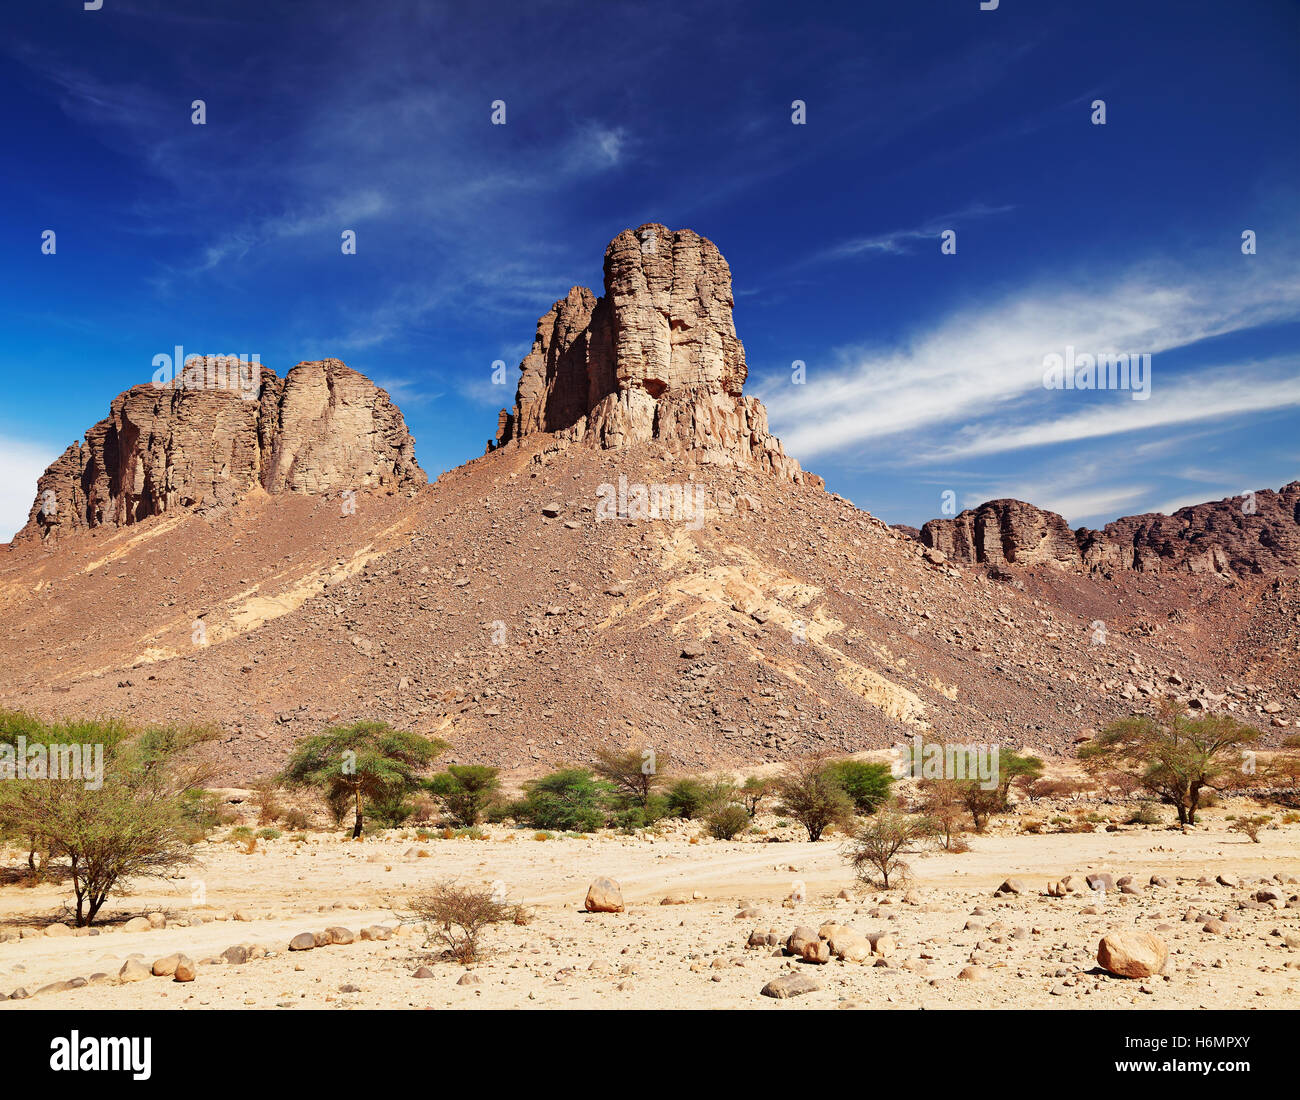 Rocks in Sahara Desert, Tassili N'Ajjer, Algeria Stock Photo